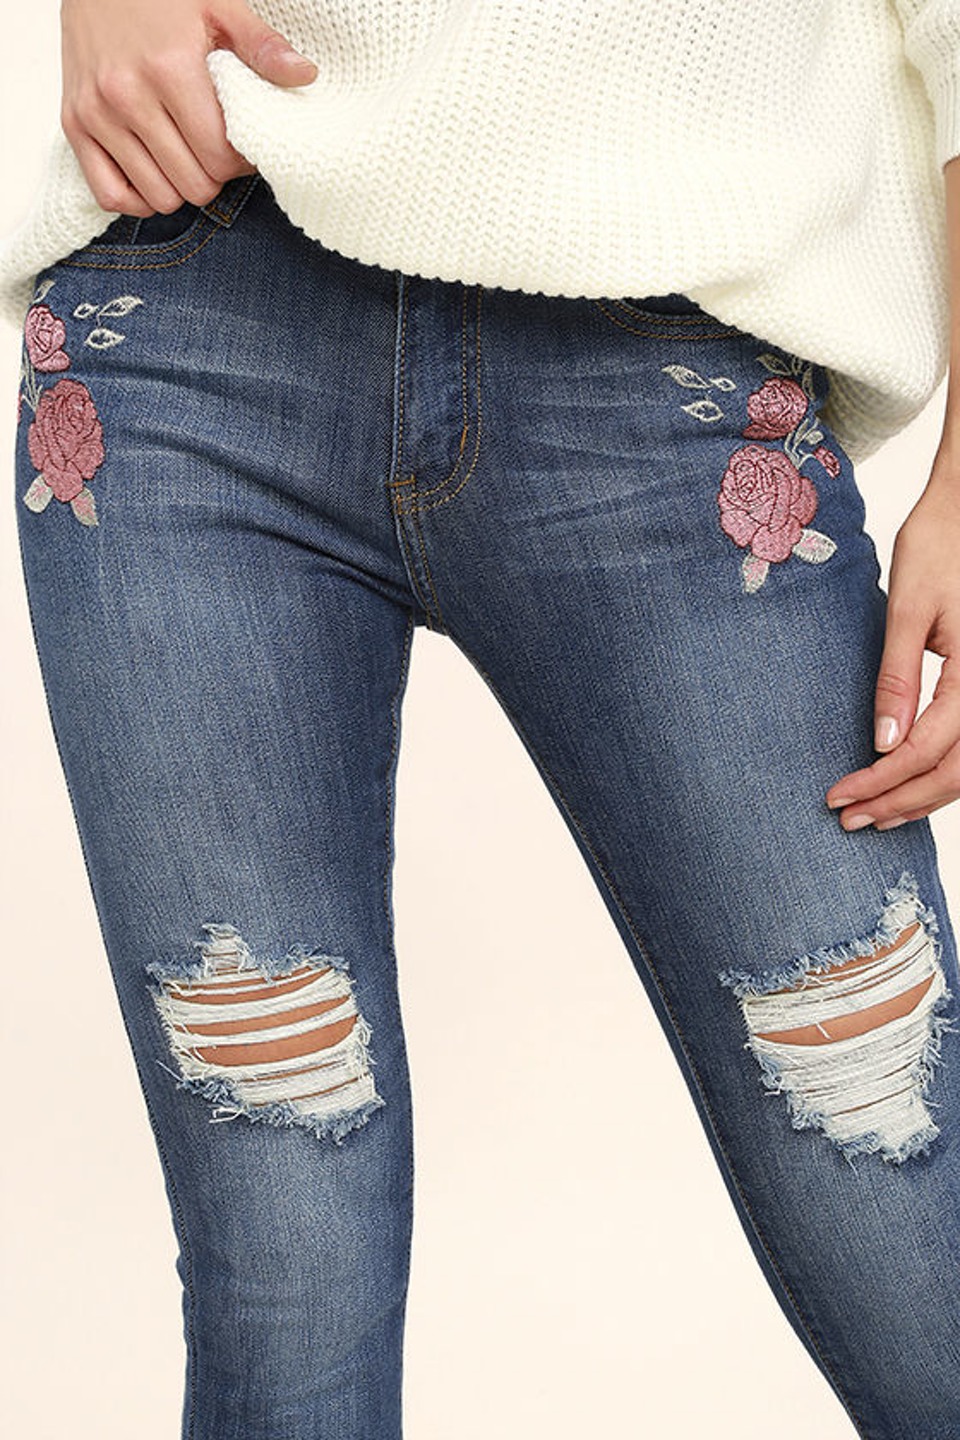 Κοrίτσια! 9 Λόγοι να Αγαπήσουμε το Κέντημα στα Jeans